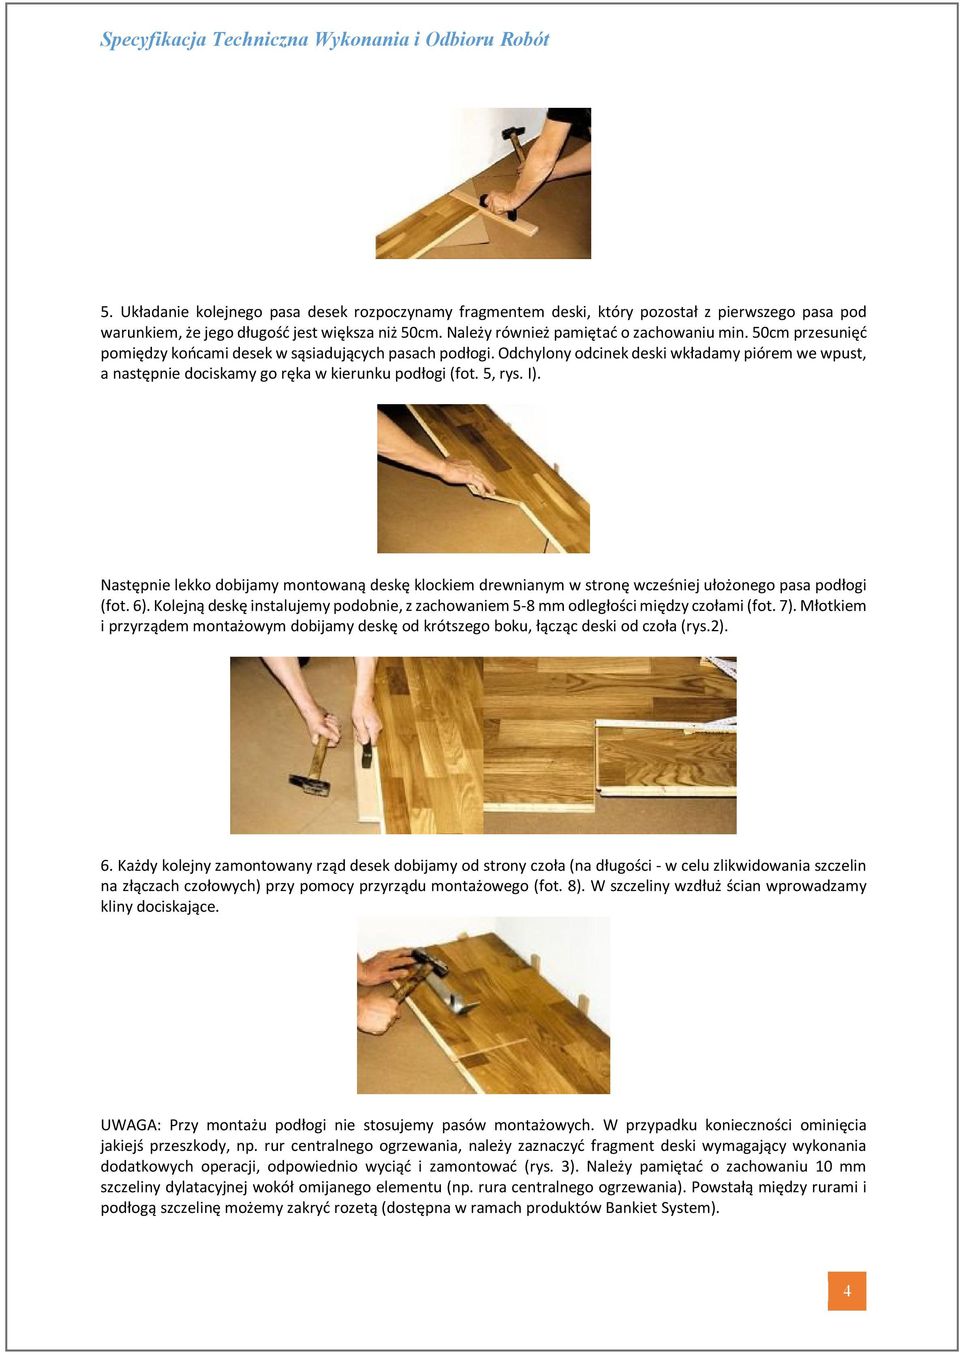 Następnie lekko dobijamy montowaną deskę klockiem drewnianym w stronę wcześniej ułożonego pasa podłogi (fot. 6).